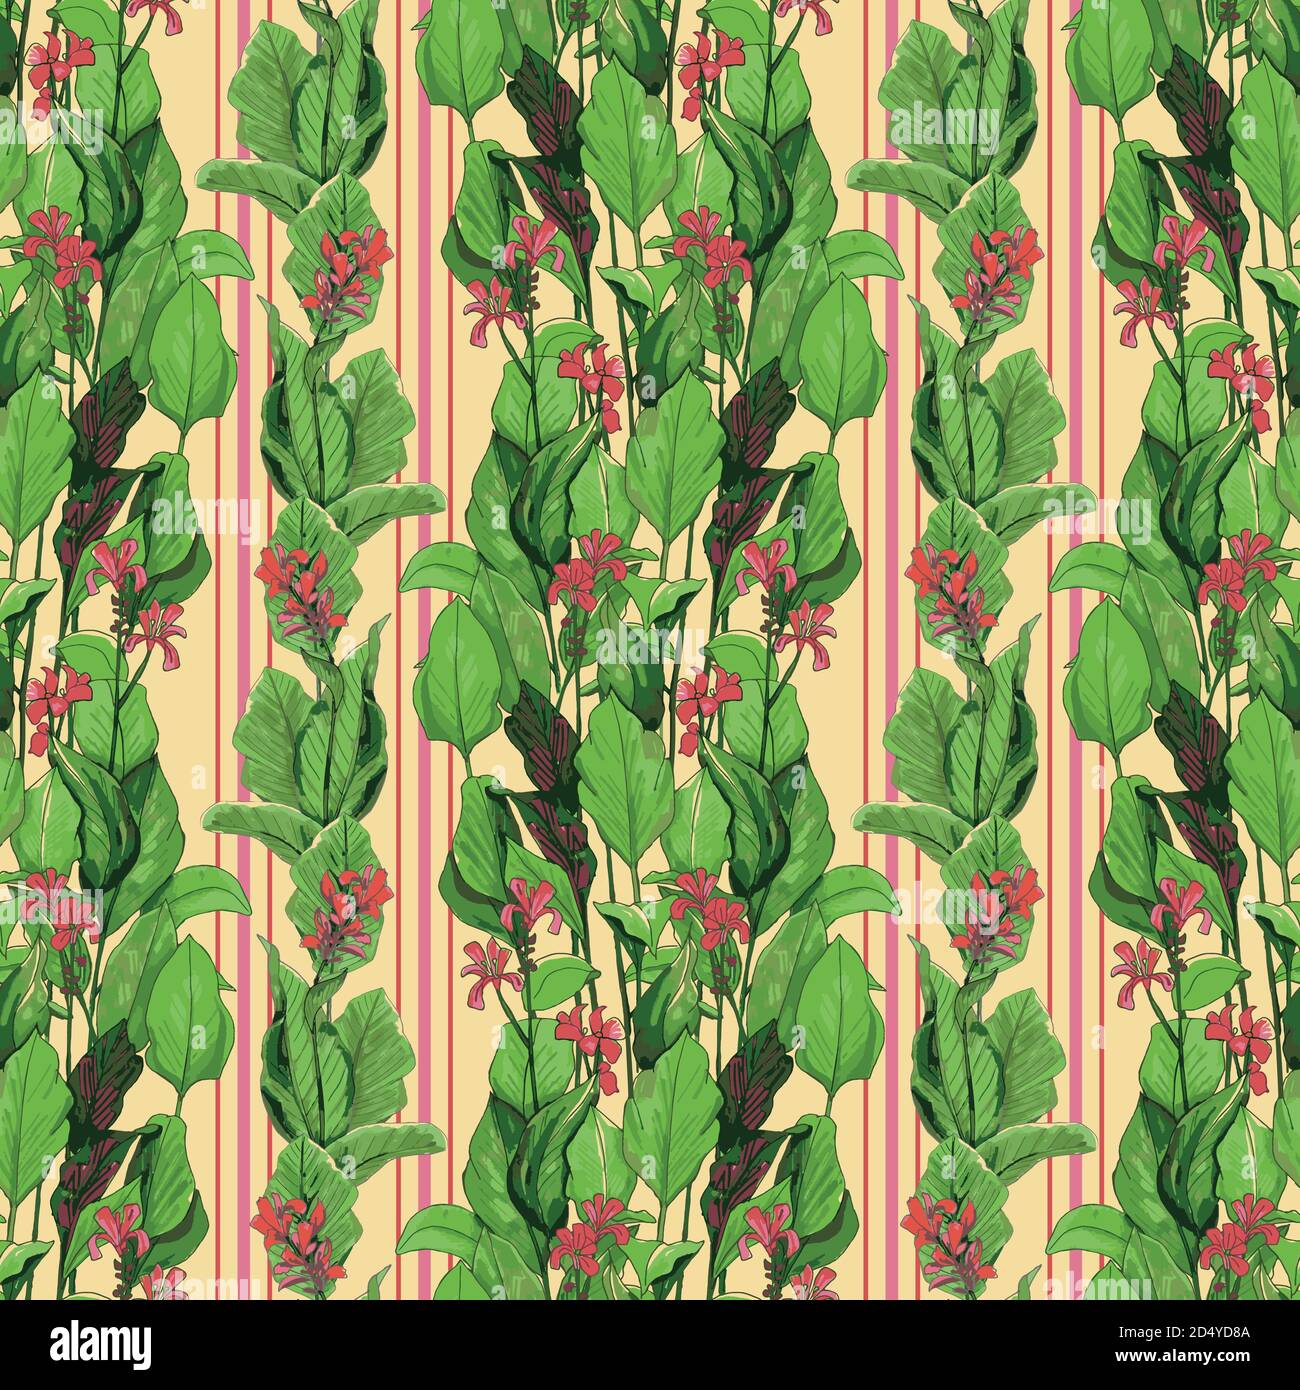 Nahtloses Tropenmuster. Abbildung der Blätter von der Palme. Moderne Grafiken. Rote Canna, ein florales tropisches Muster mit Streifen Stock Vektor